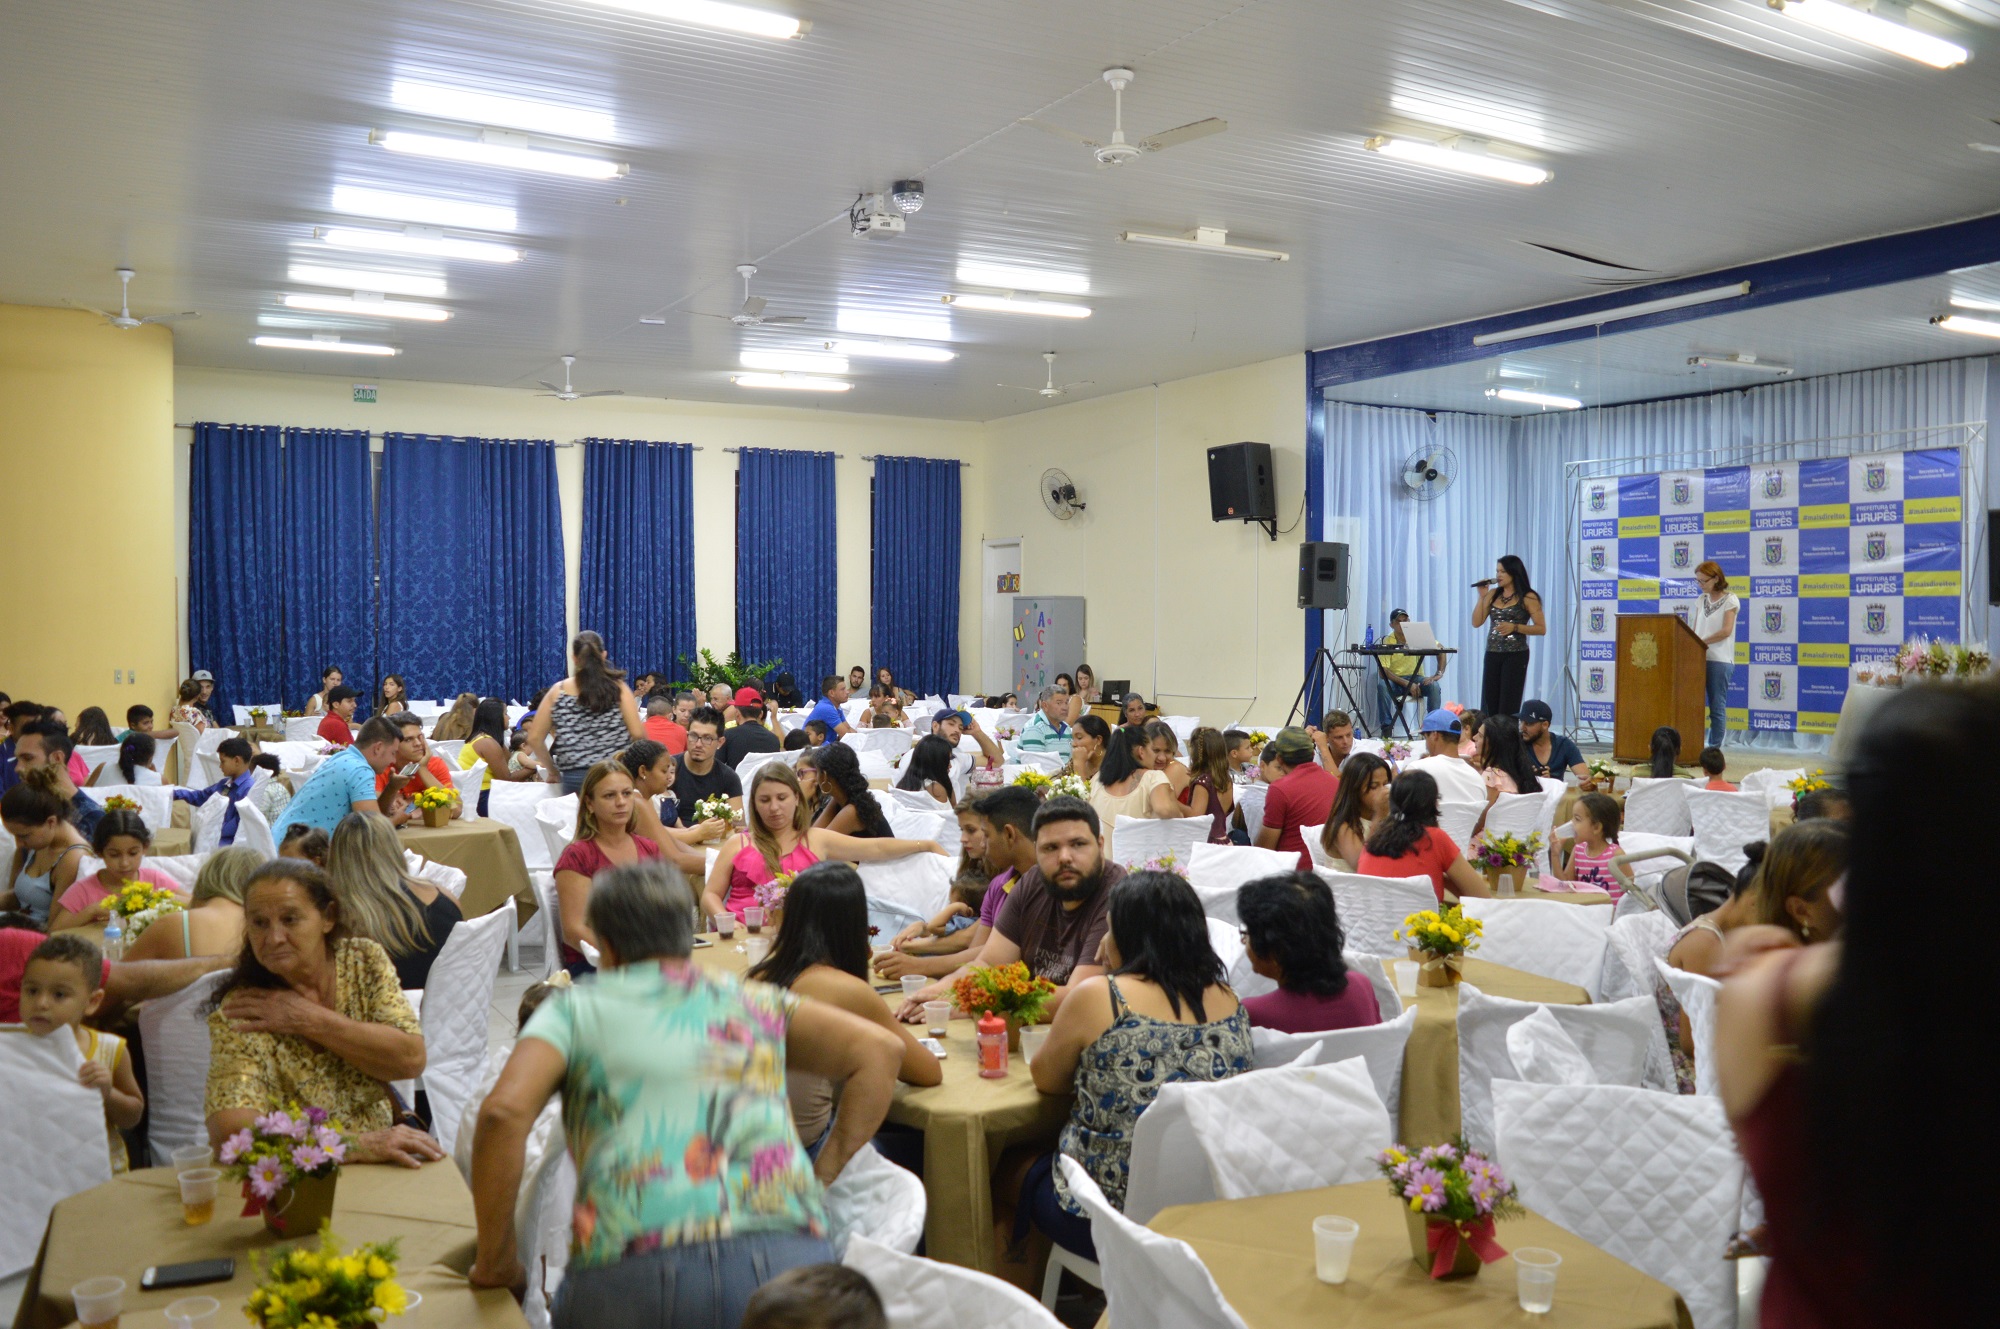 Evento aconteceu no Centro de Convivência do Idoso de Urupês e reuniu familiares das crianças atendidas pelo Programa. Foto: Benjamim Paschoal Lopes  / Prefeitura Municipal de Urupês.